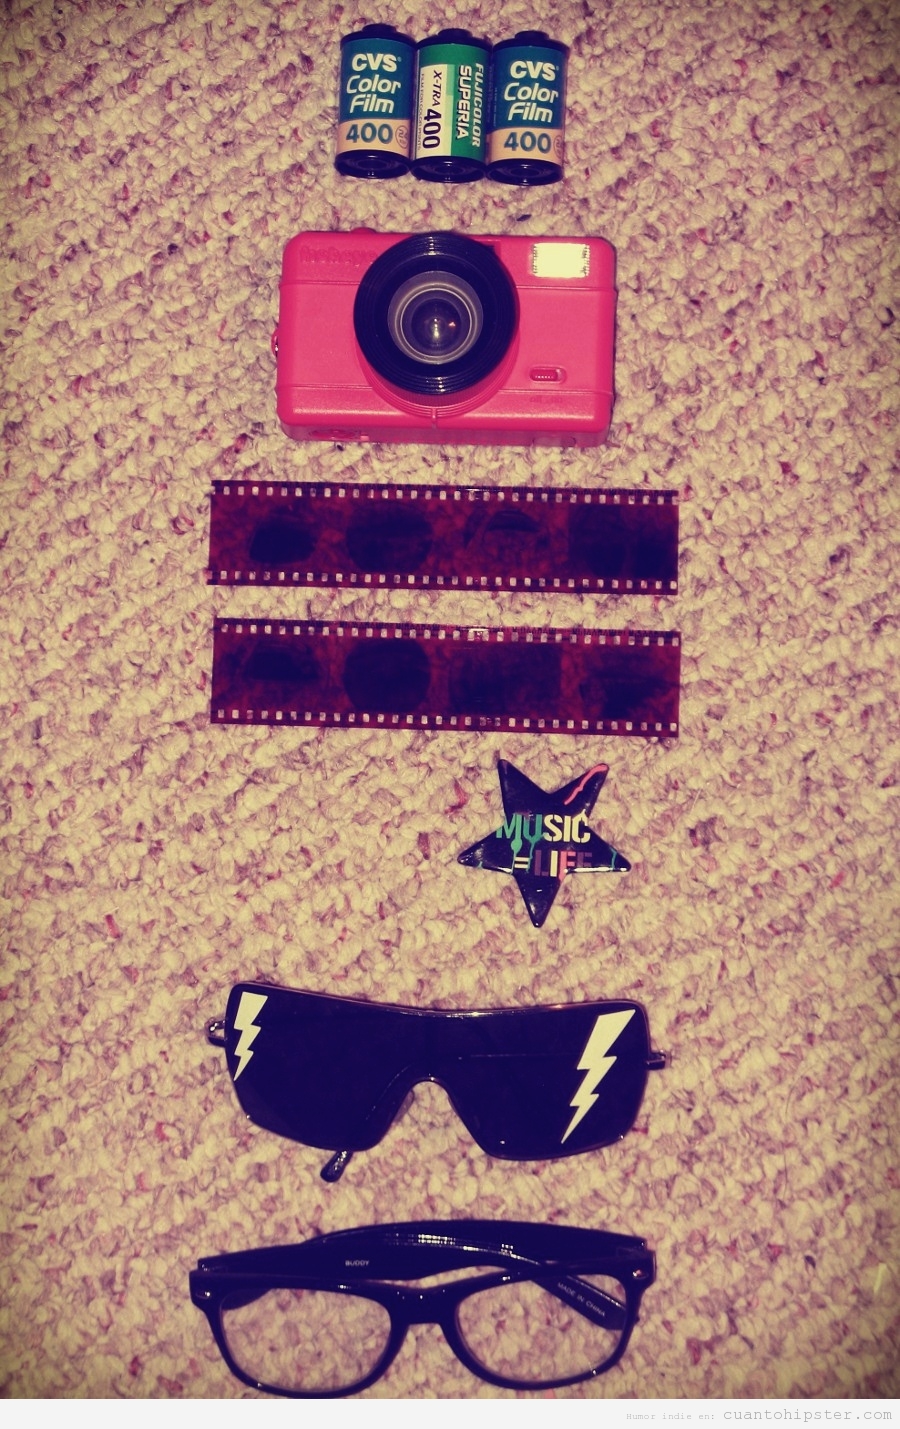 Kit hipster con cámara antigua, carrete de fotos y gafas de sol